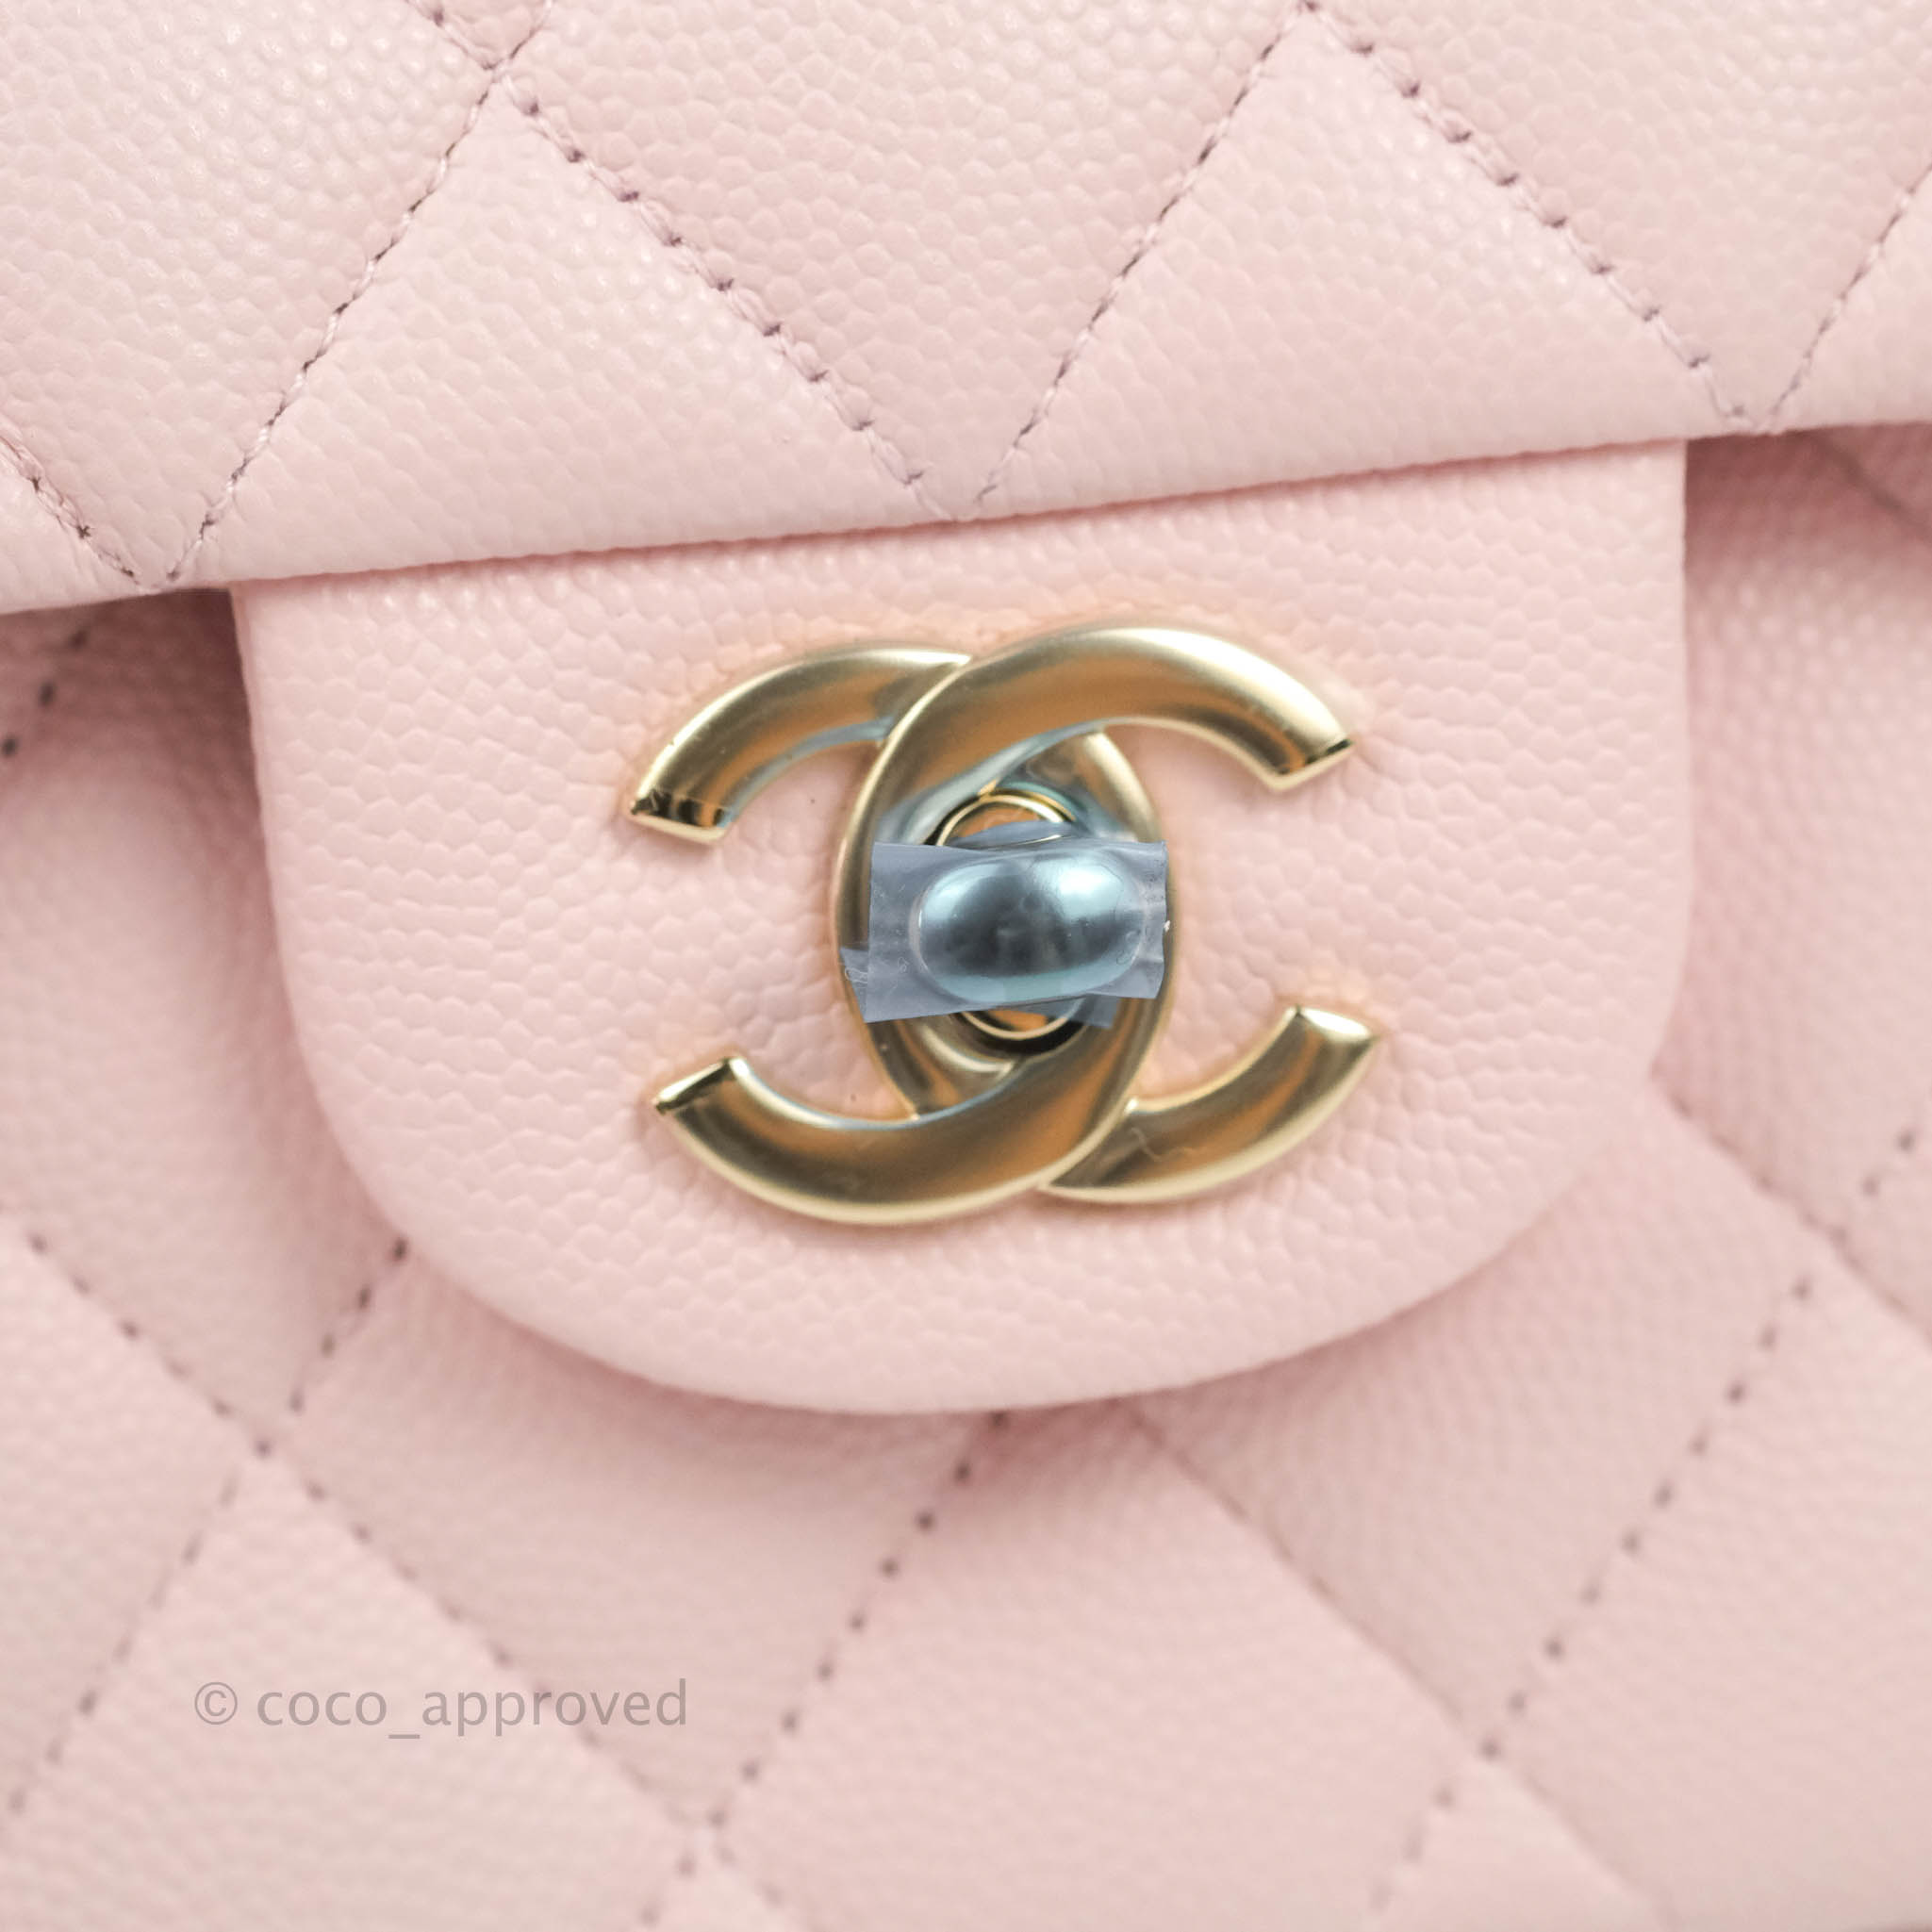 light pink chanel handbag